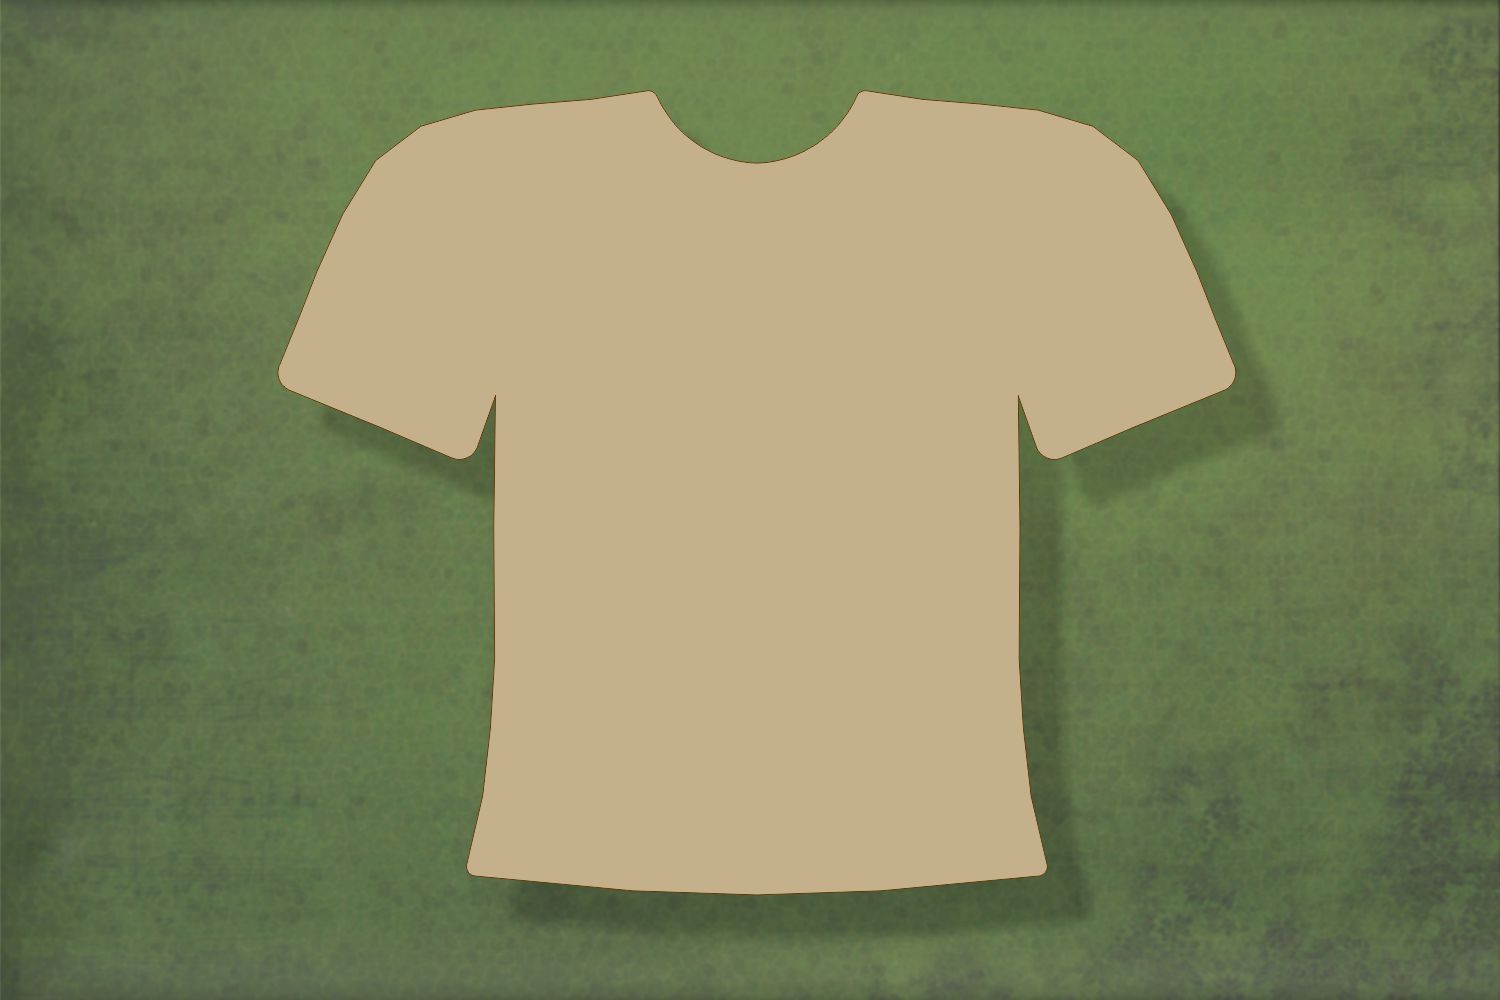 Laser cut, blank wooden Football shirt shape for craft